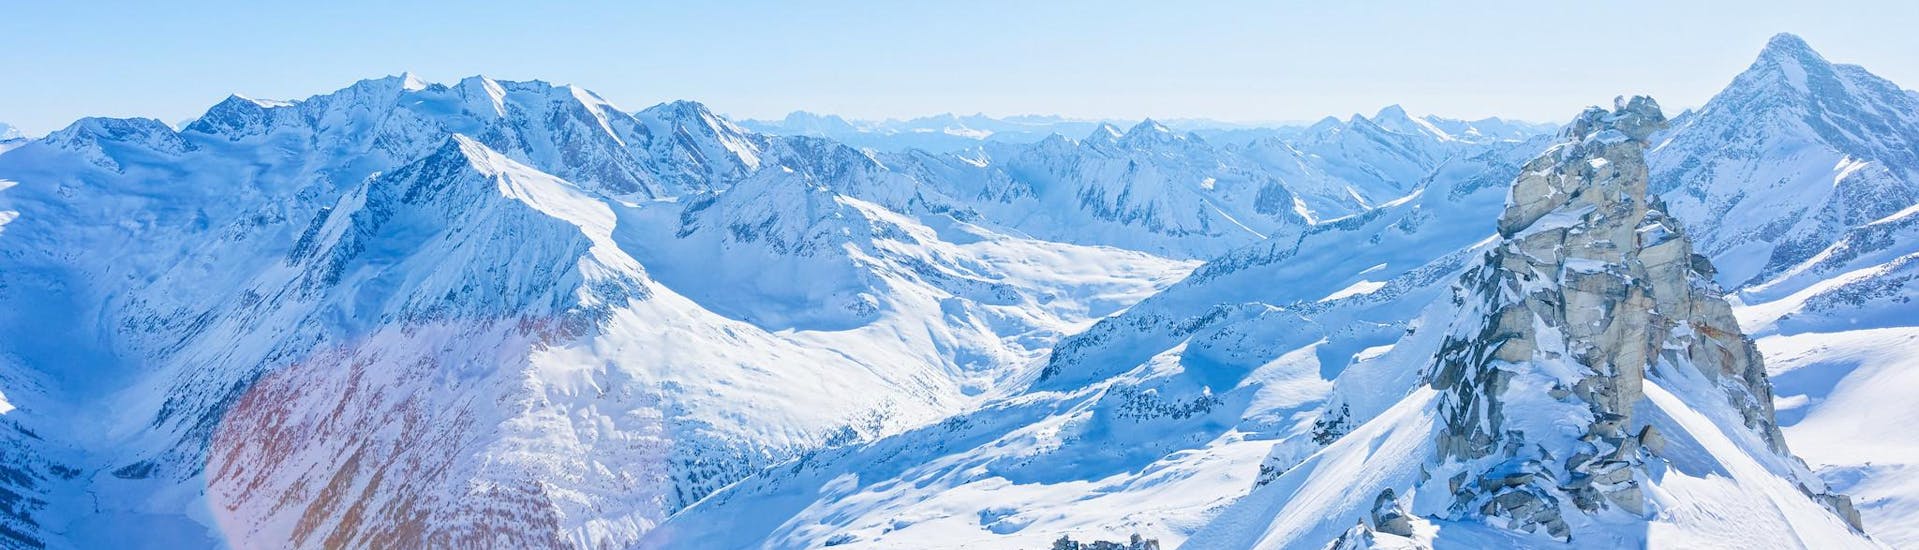 Blick auf die schneebedeckten Gipfel des Hintertuxer Gletschers, wo die örtlichen Skischulen ihre Skikurse anbieten.